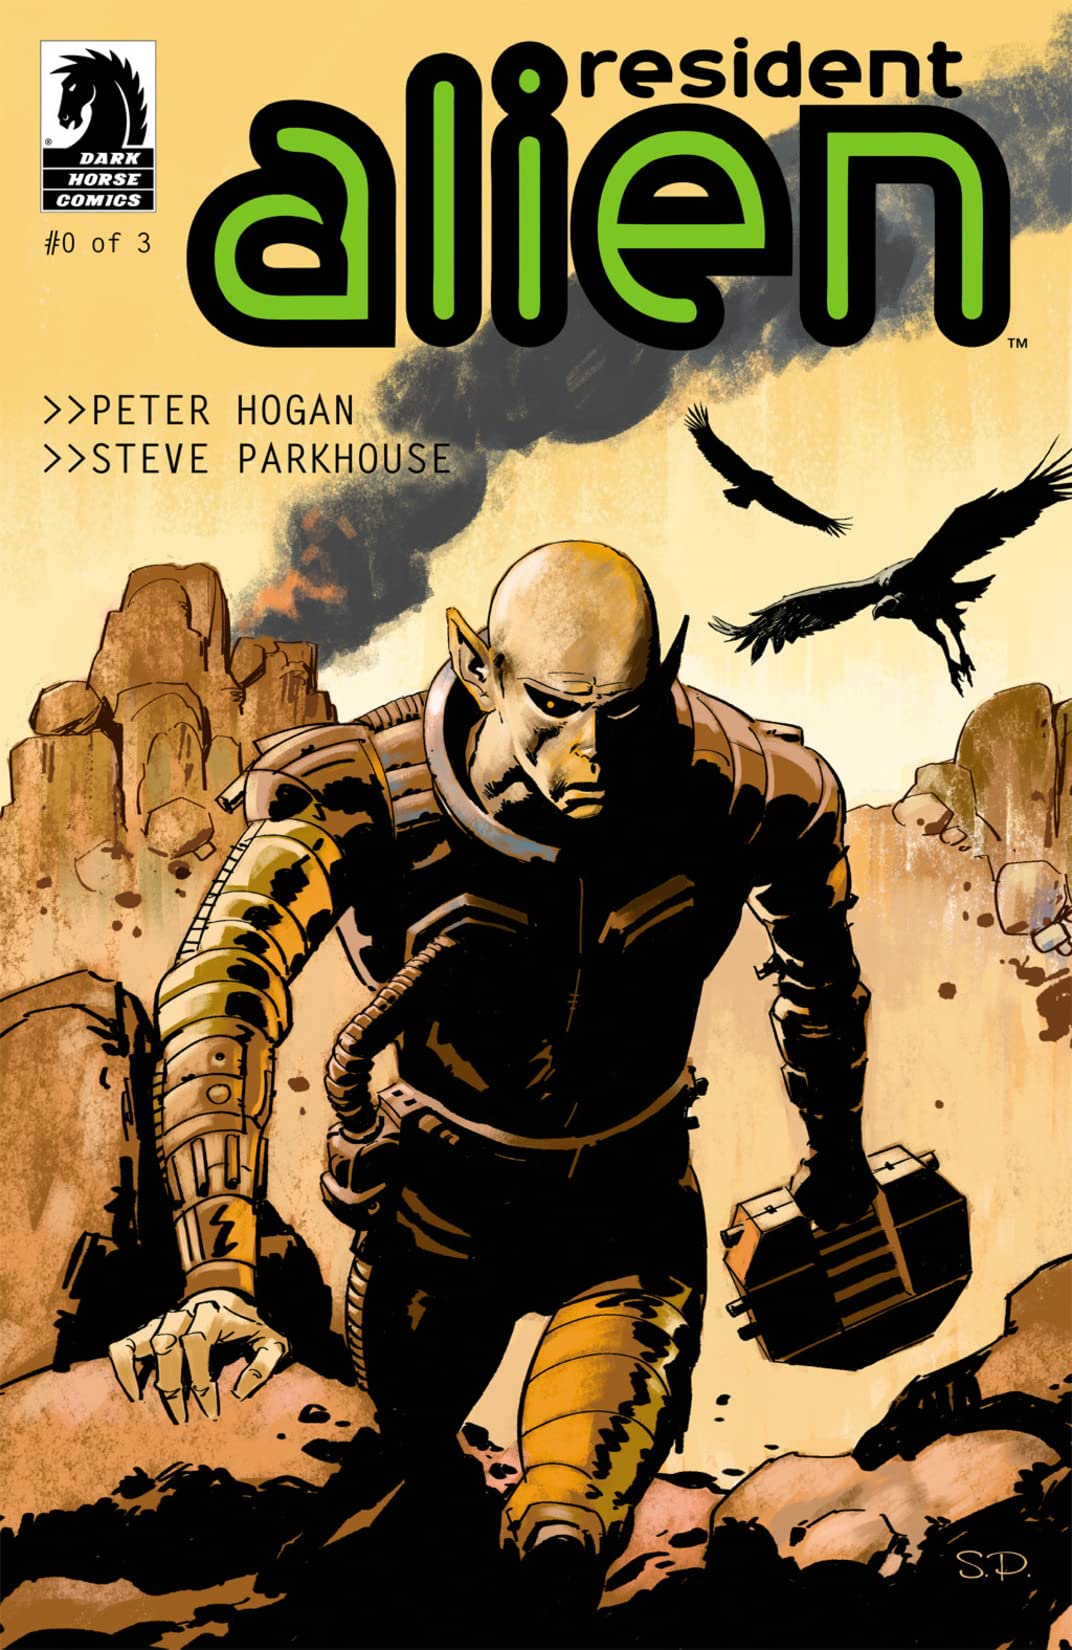 Resident Alien #0 cover by Steve Parkhouse.